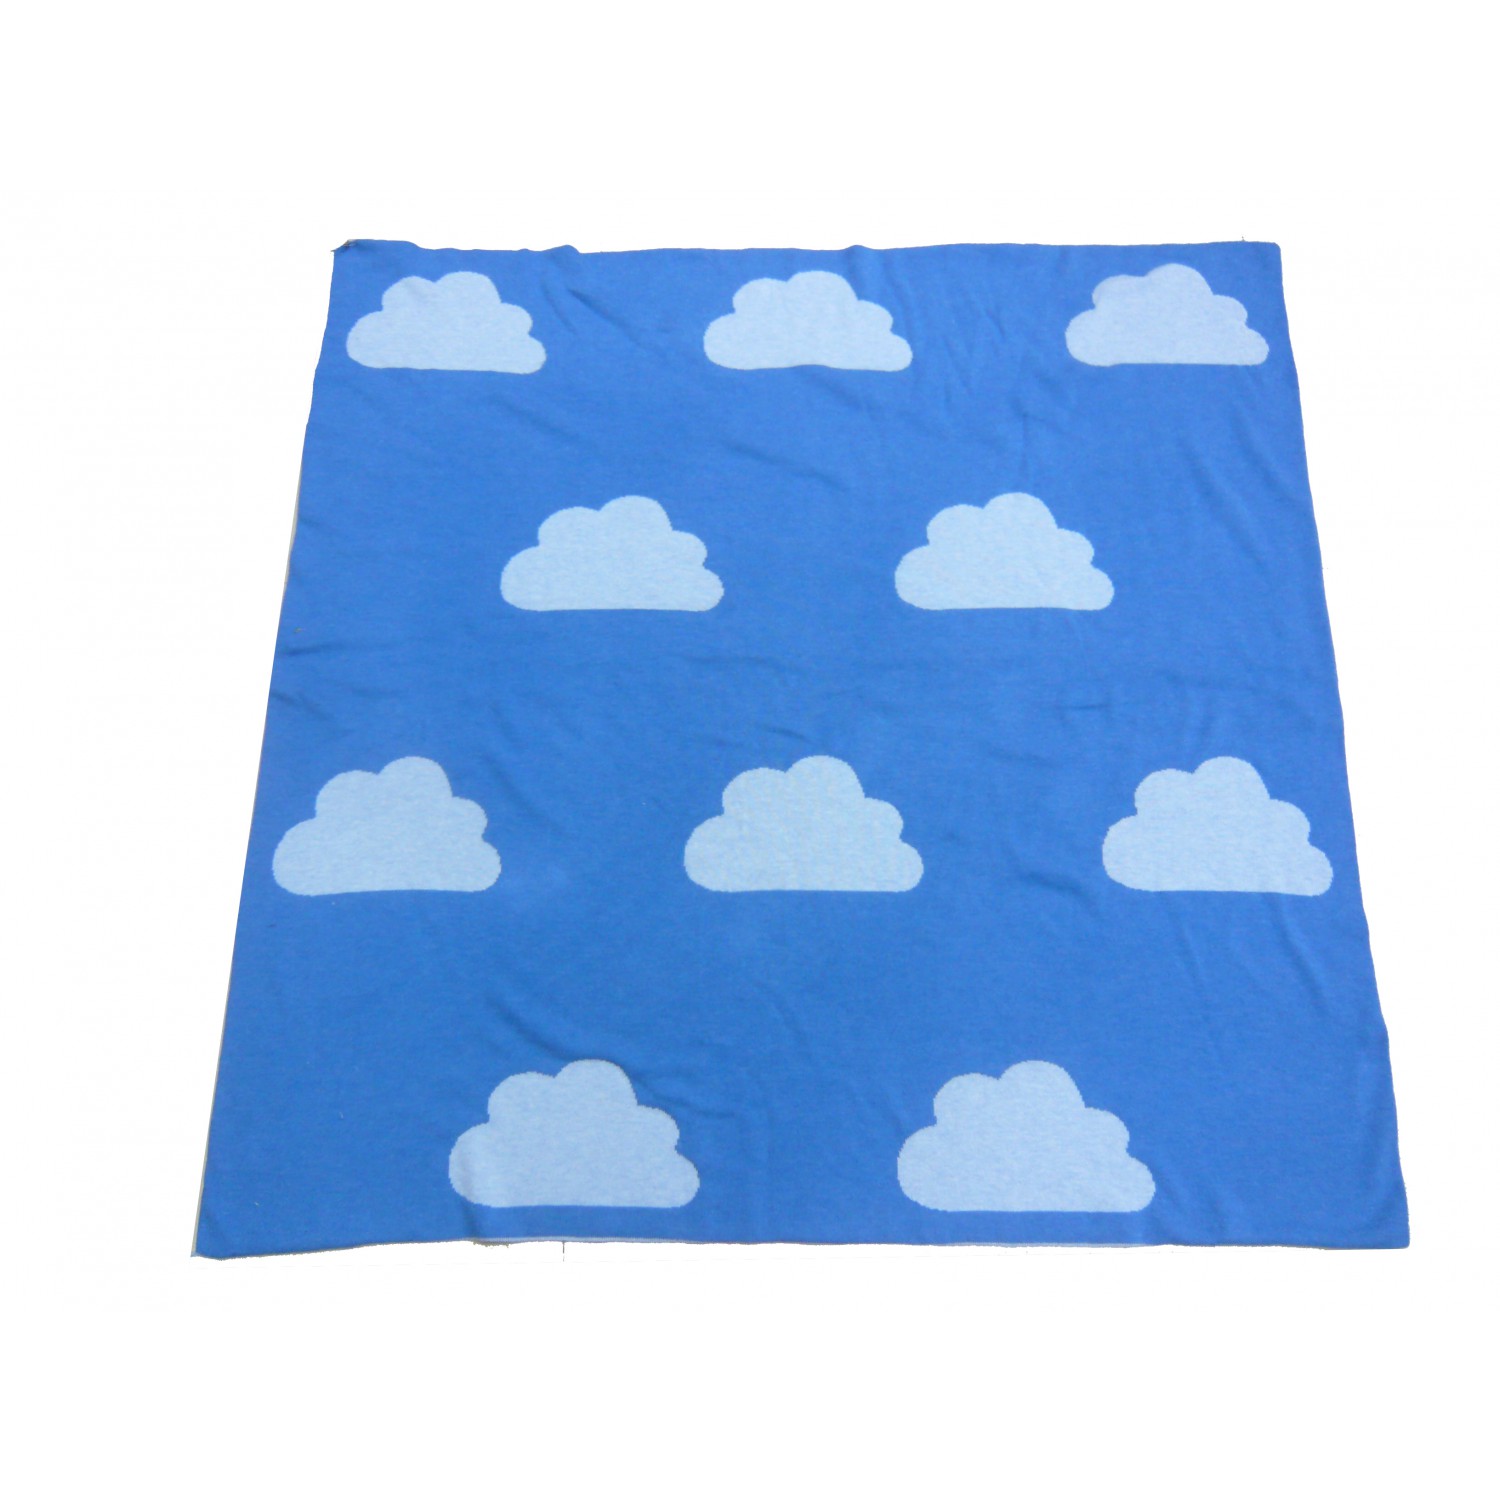 Cigogne Bebe's Little Cloud Blanket - mspurple.net